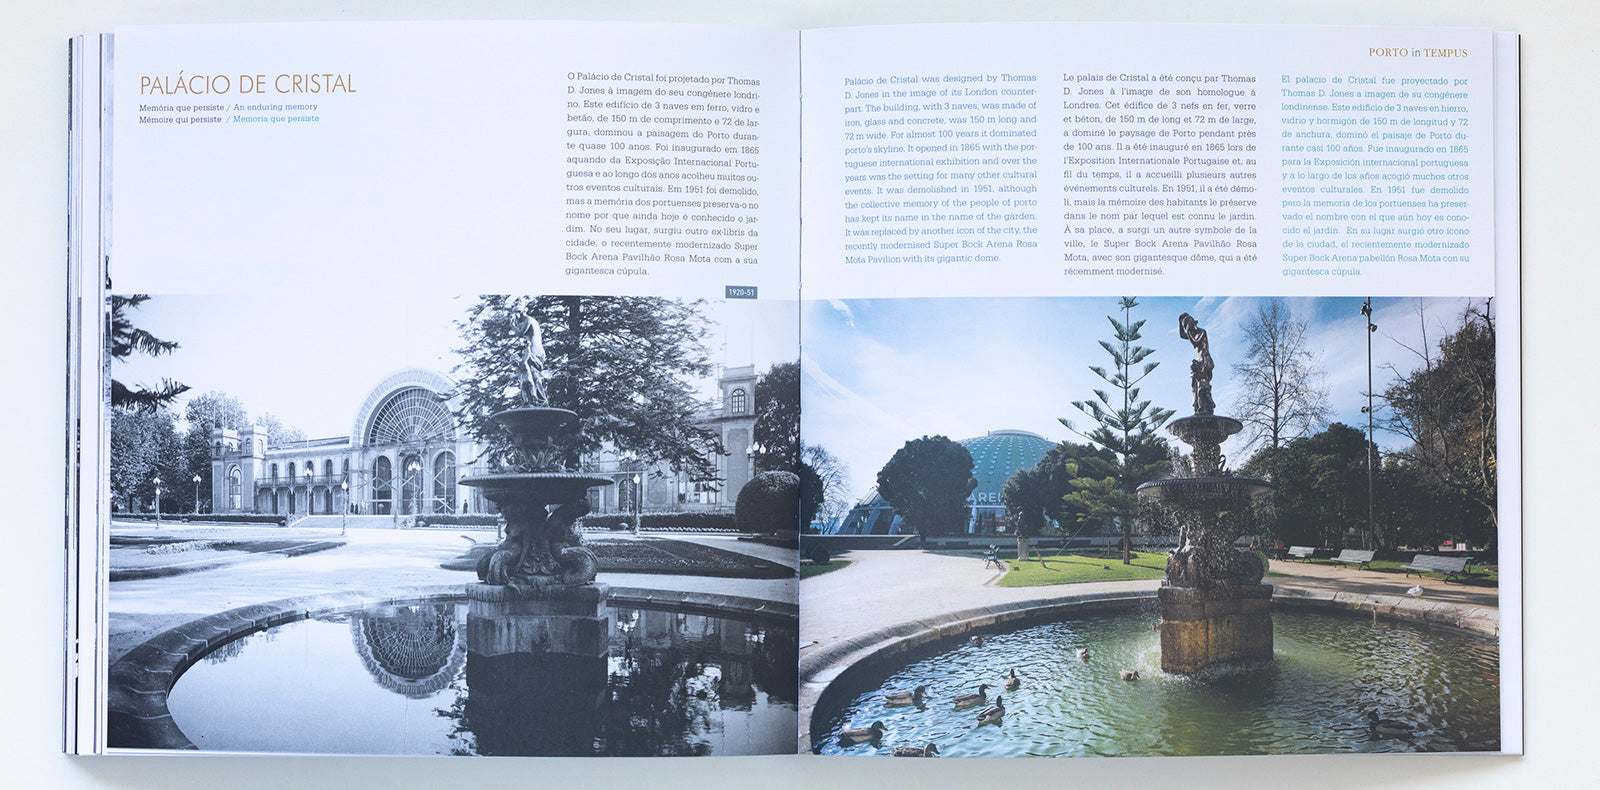 Porto in tempus book showing historic places in Porto 